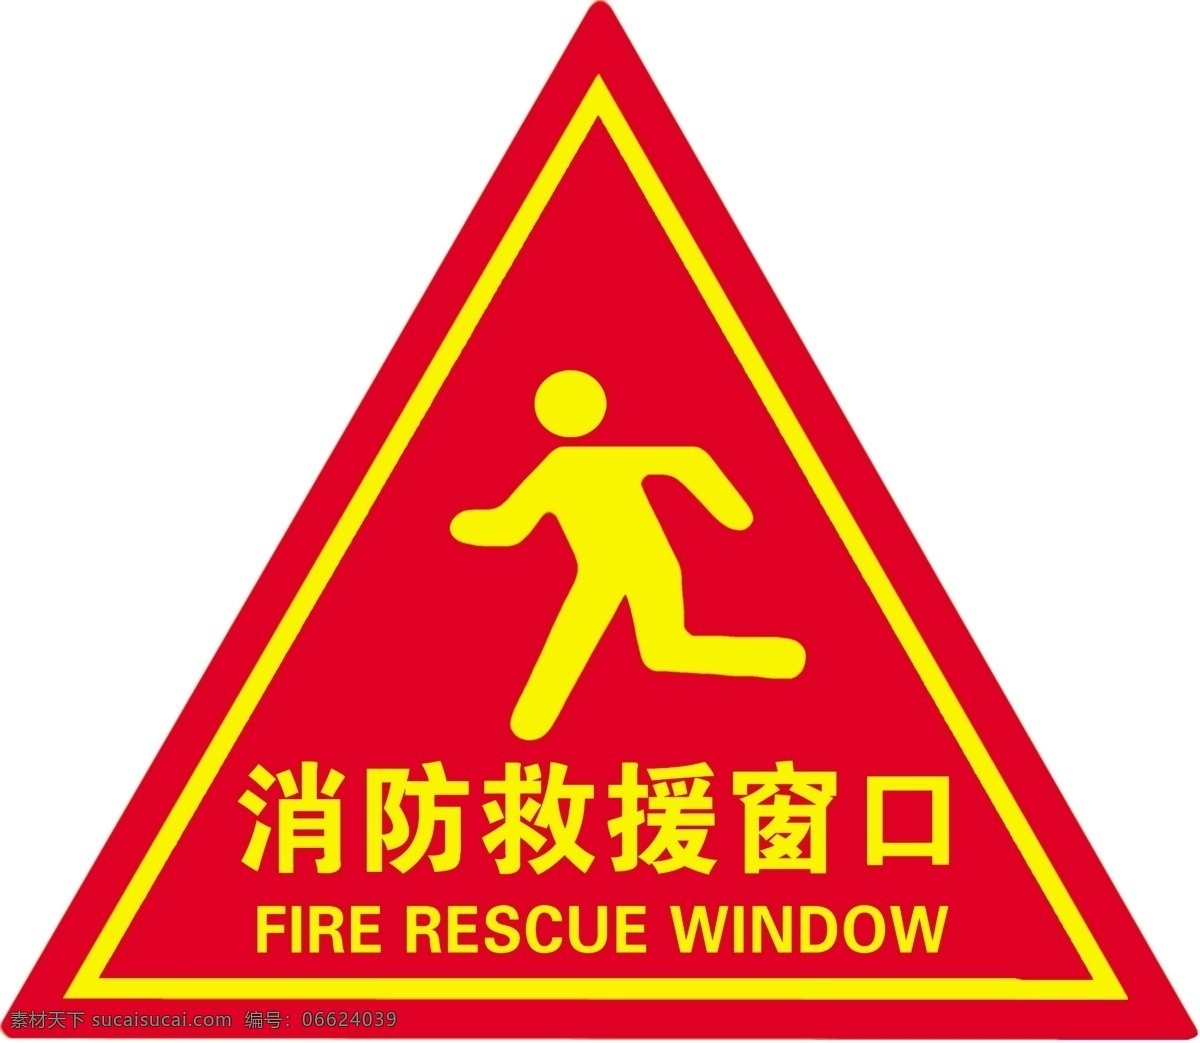 消防救援窗口 消防救援 消防安全 警示牌 提示标识 救援窗口 标志图标 公共标识标志